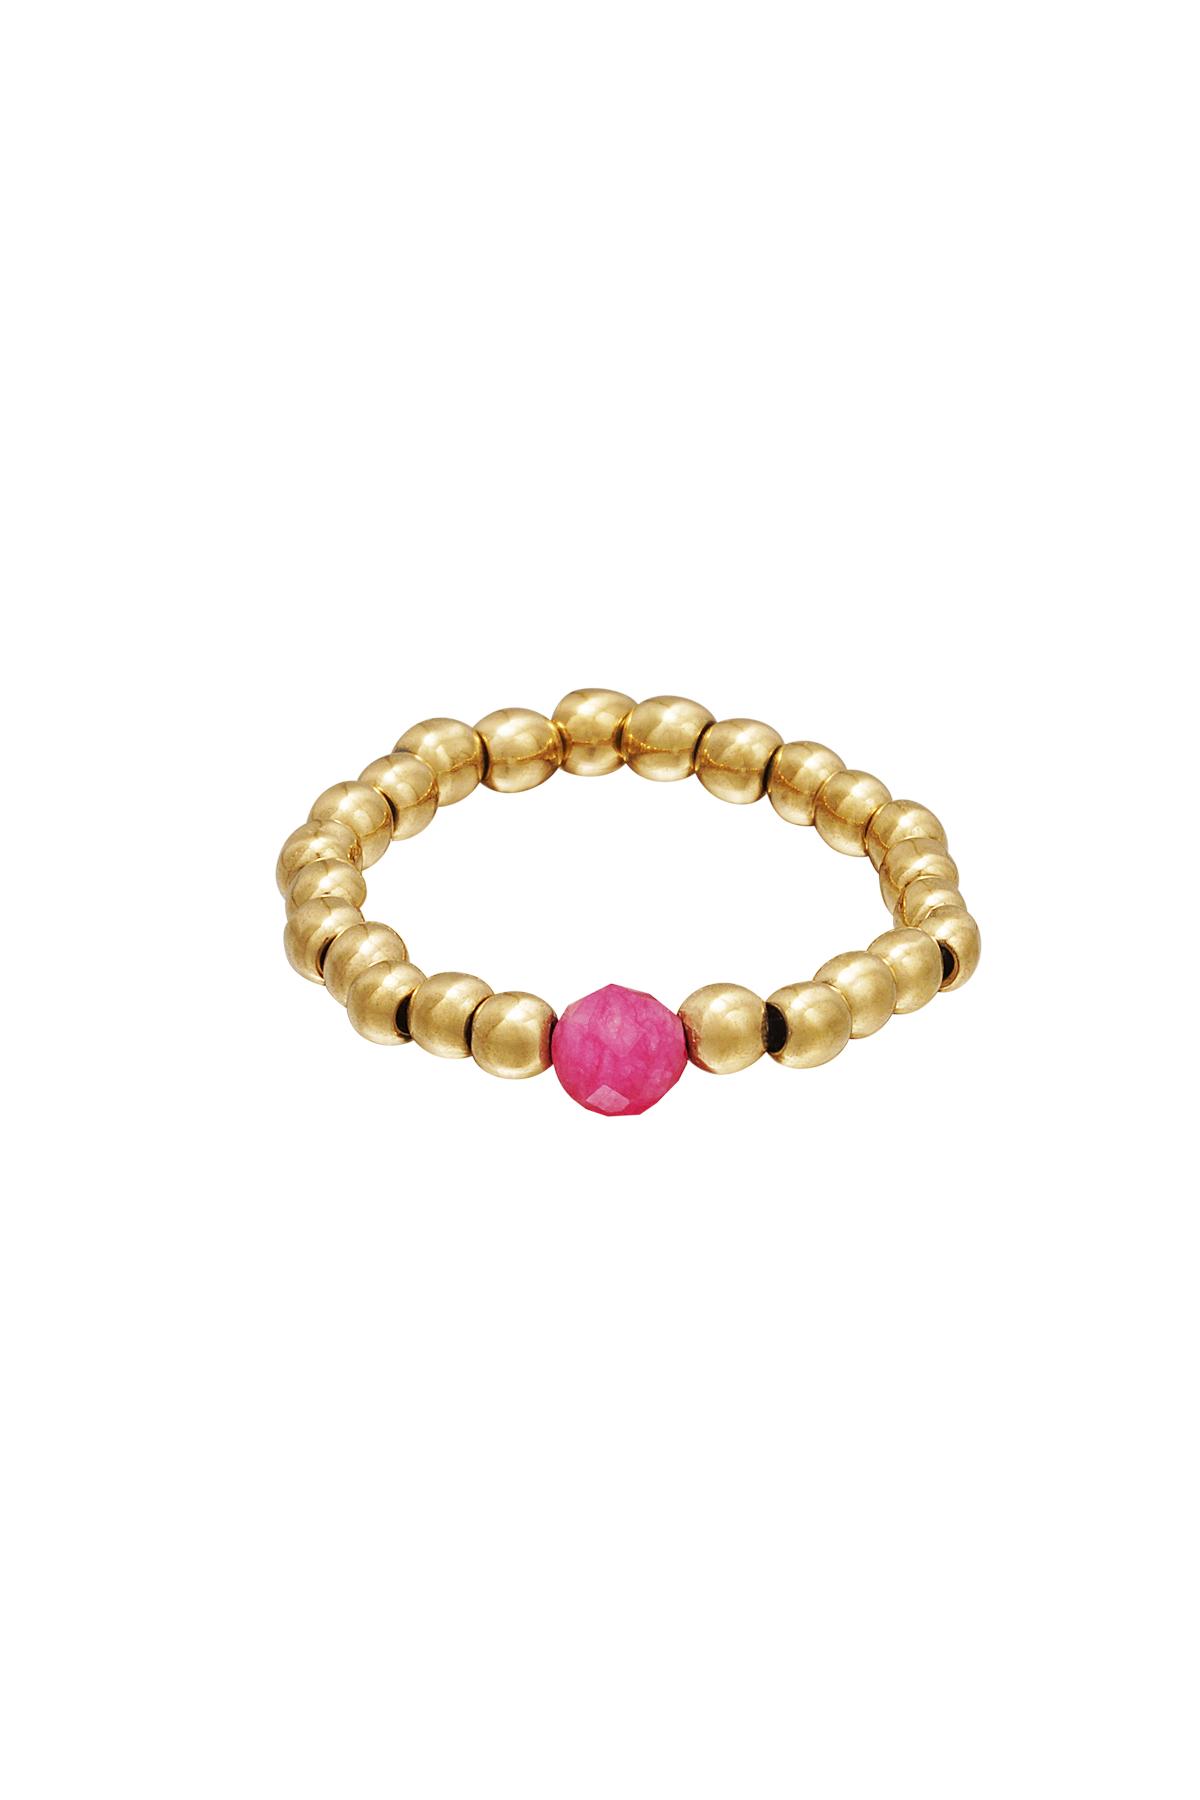 Toe ring beads Rose Hematite 14